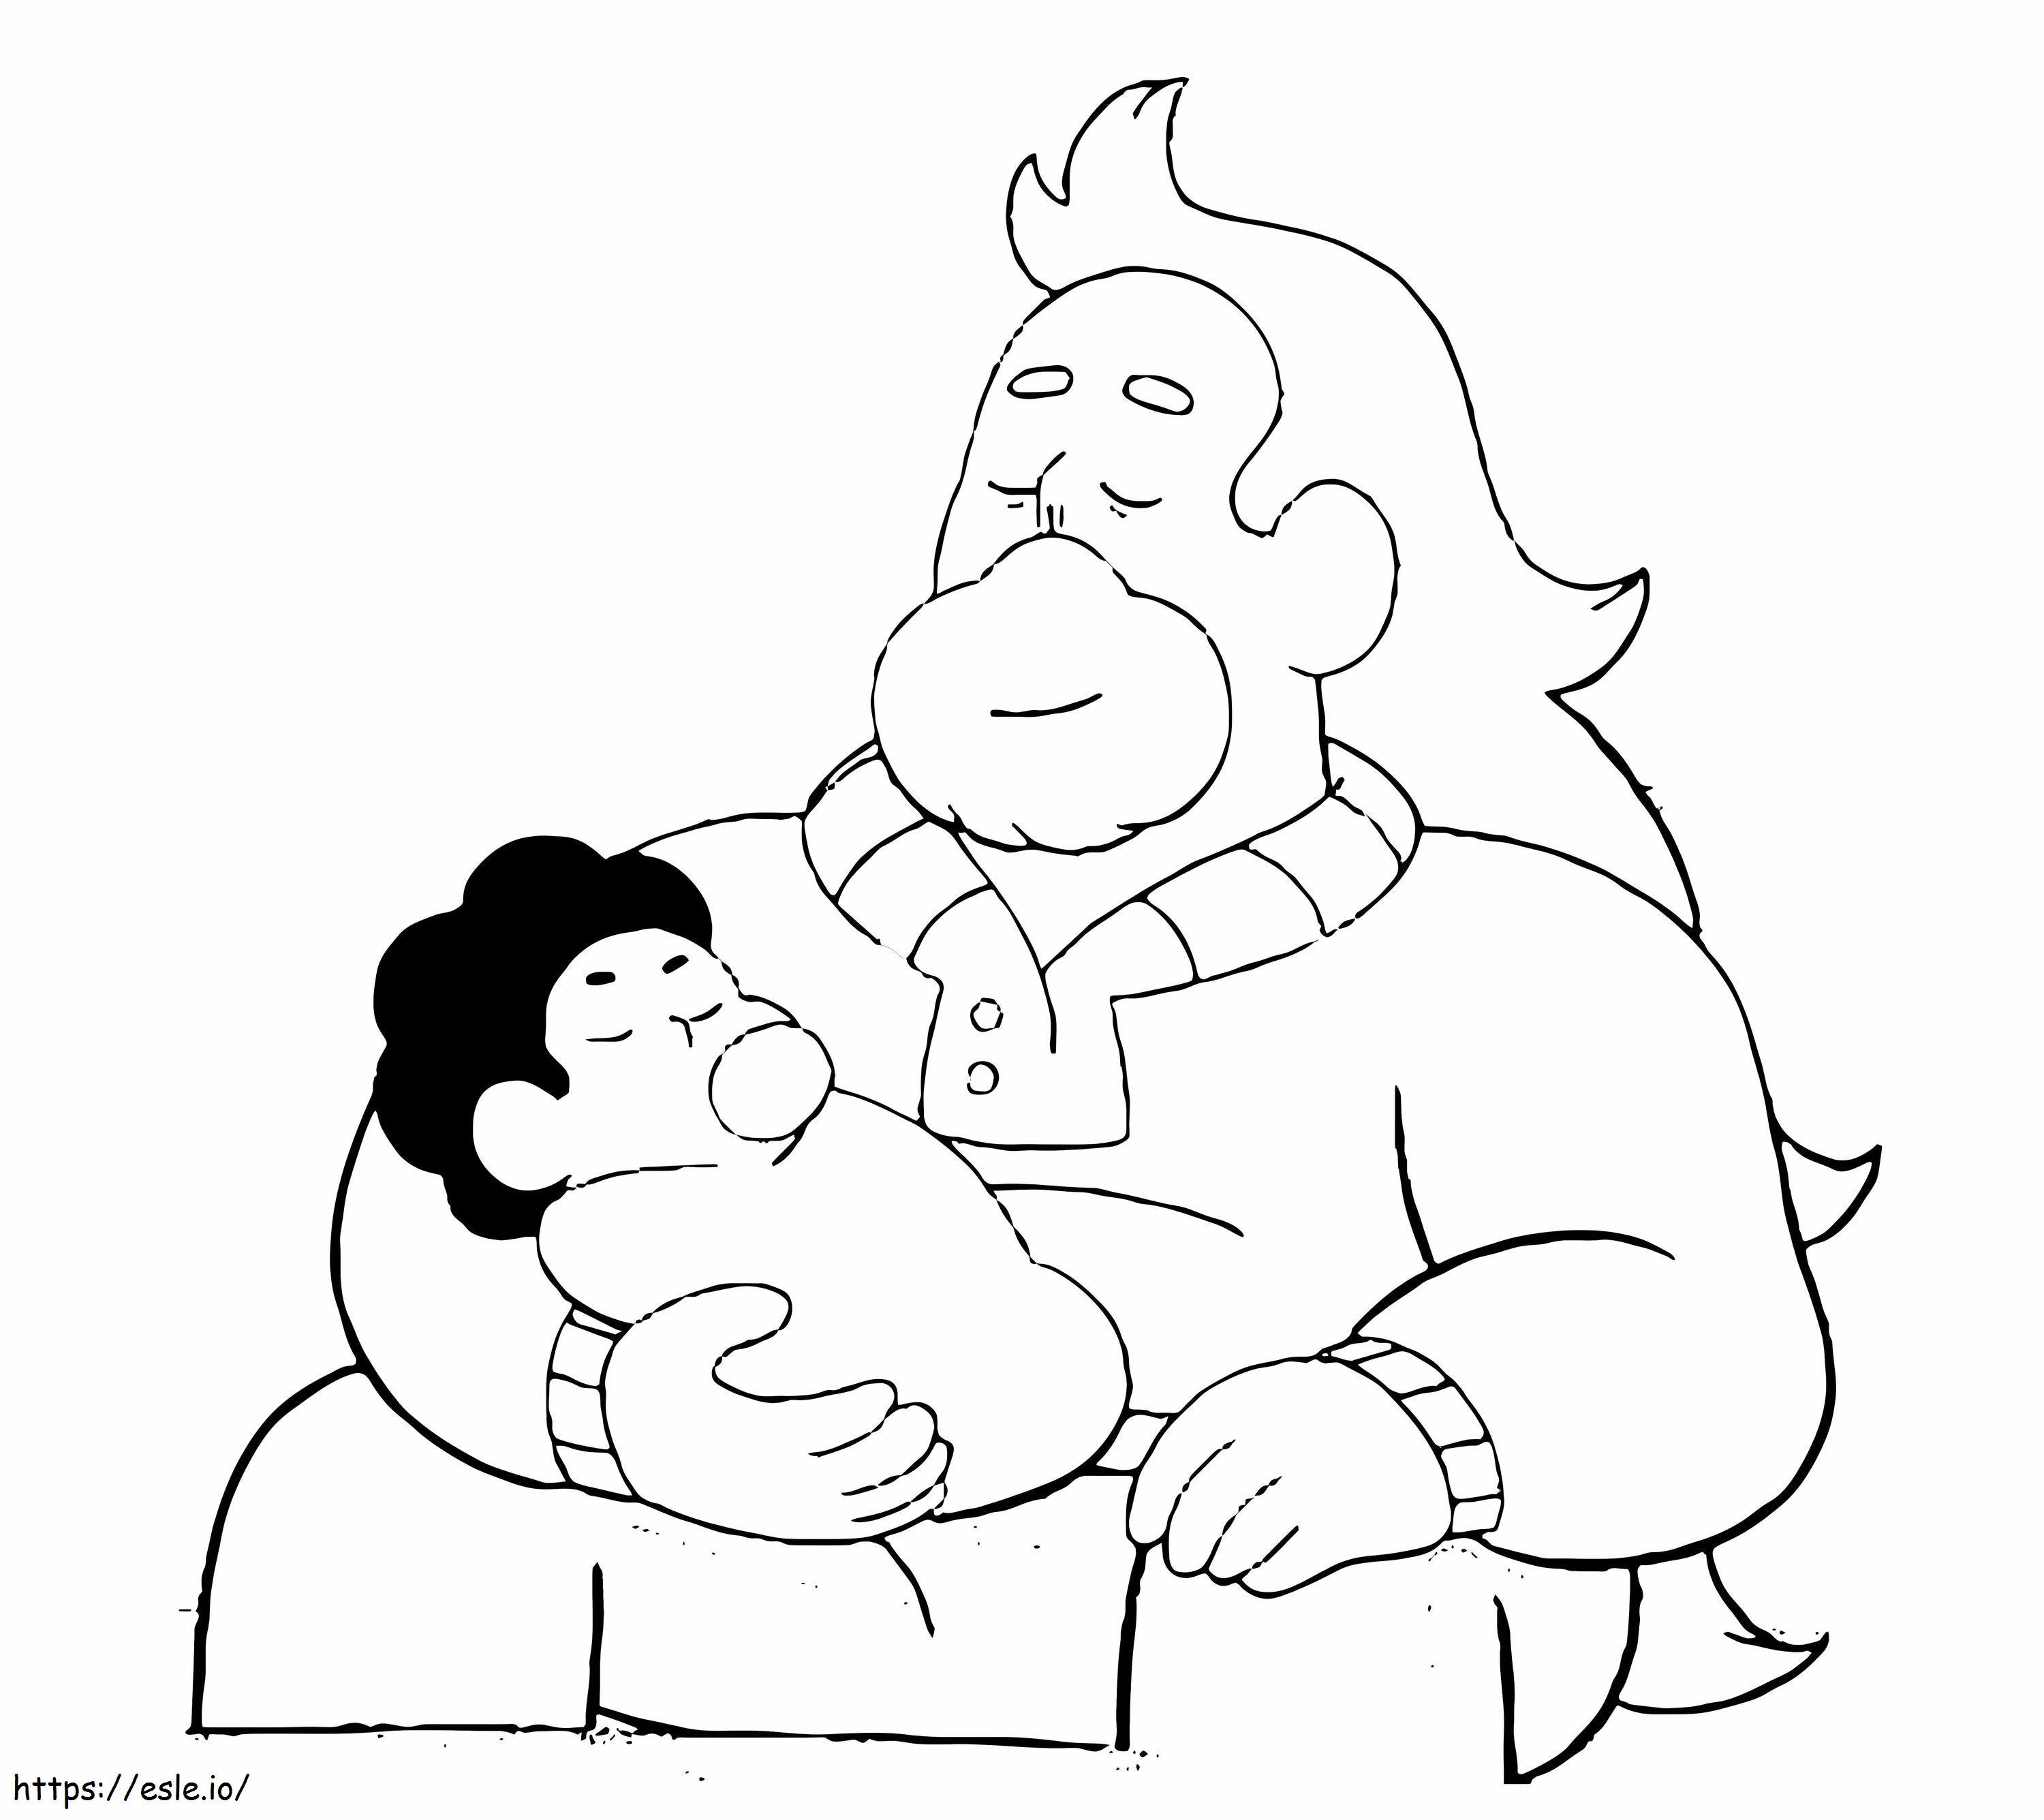 Greg sosteniendo al bebé Steven para colorear